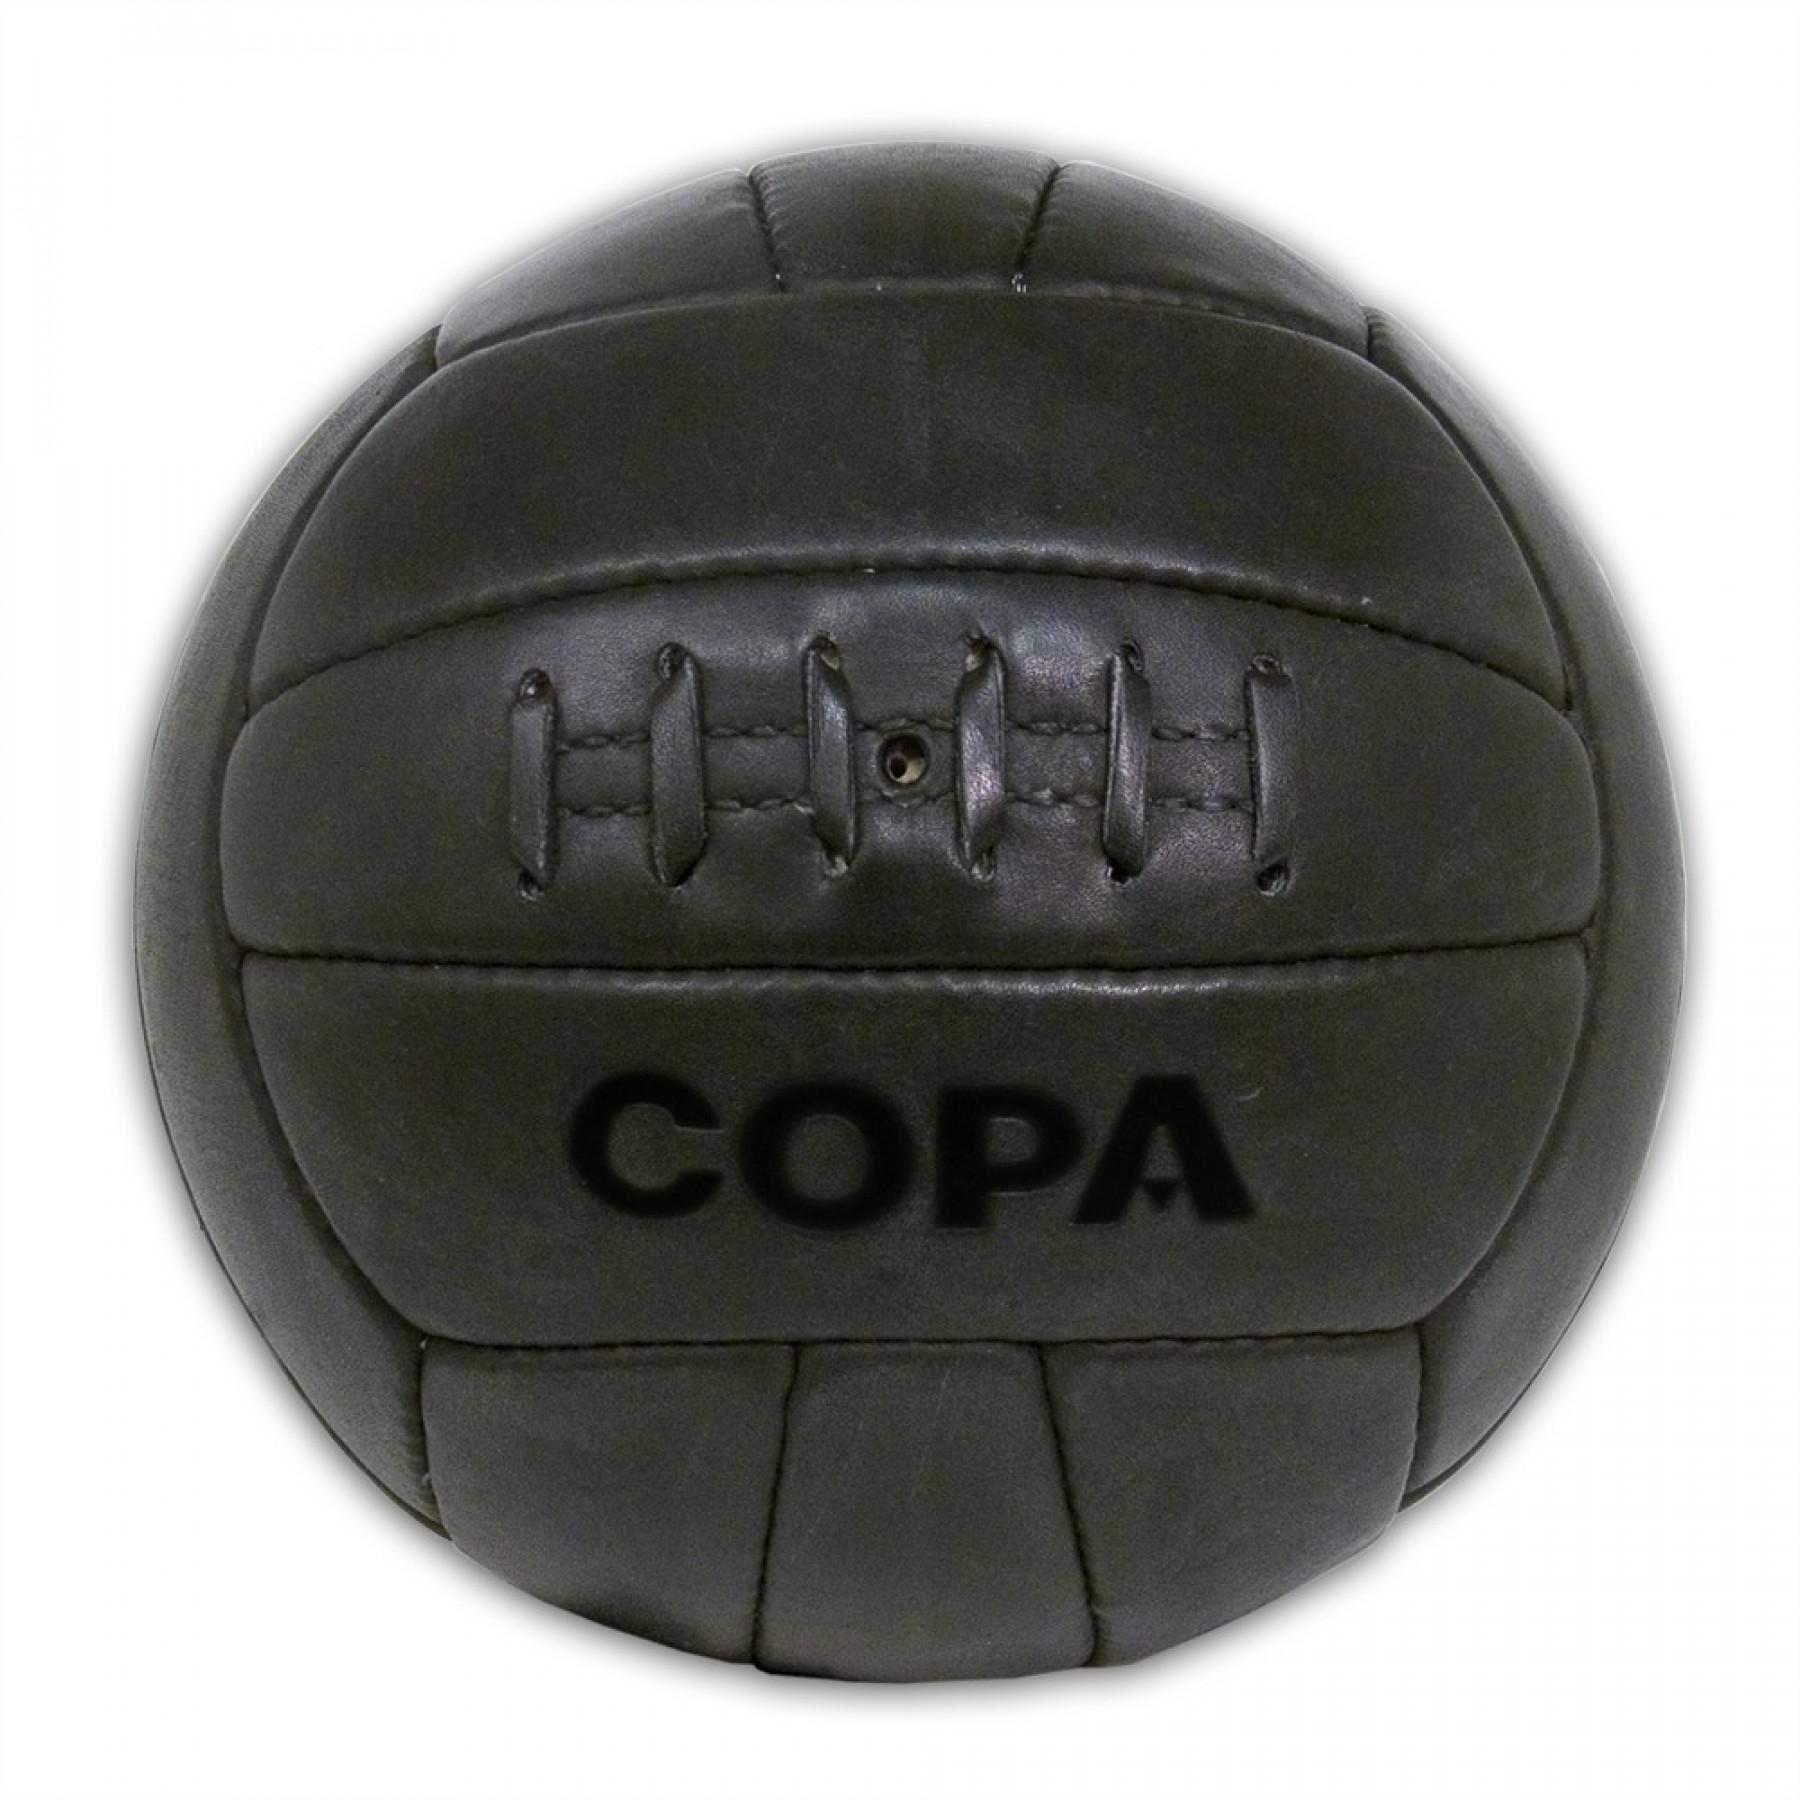 Весы мячи футбола. Мяч Copa Retro. Кожаный мяч. Кожаный мячик. Мячик футбольный кожаный.